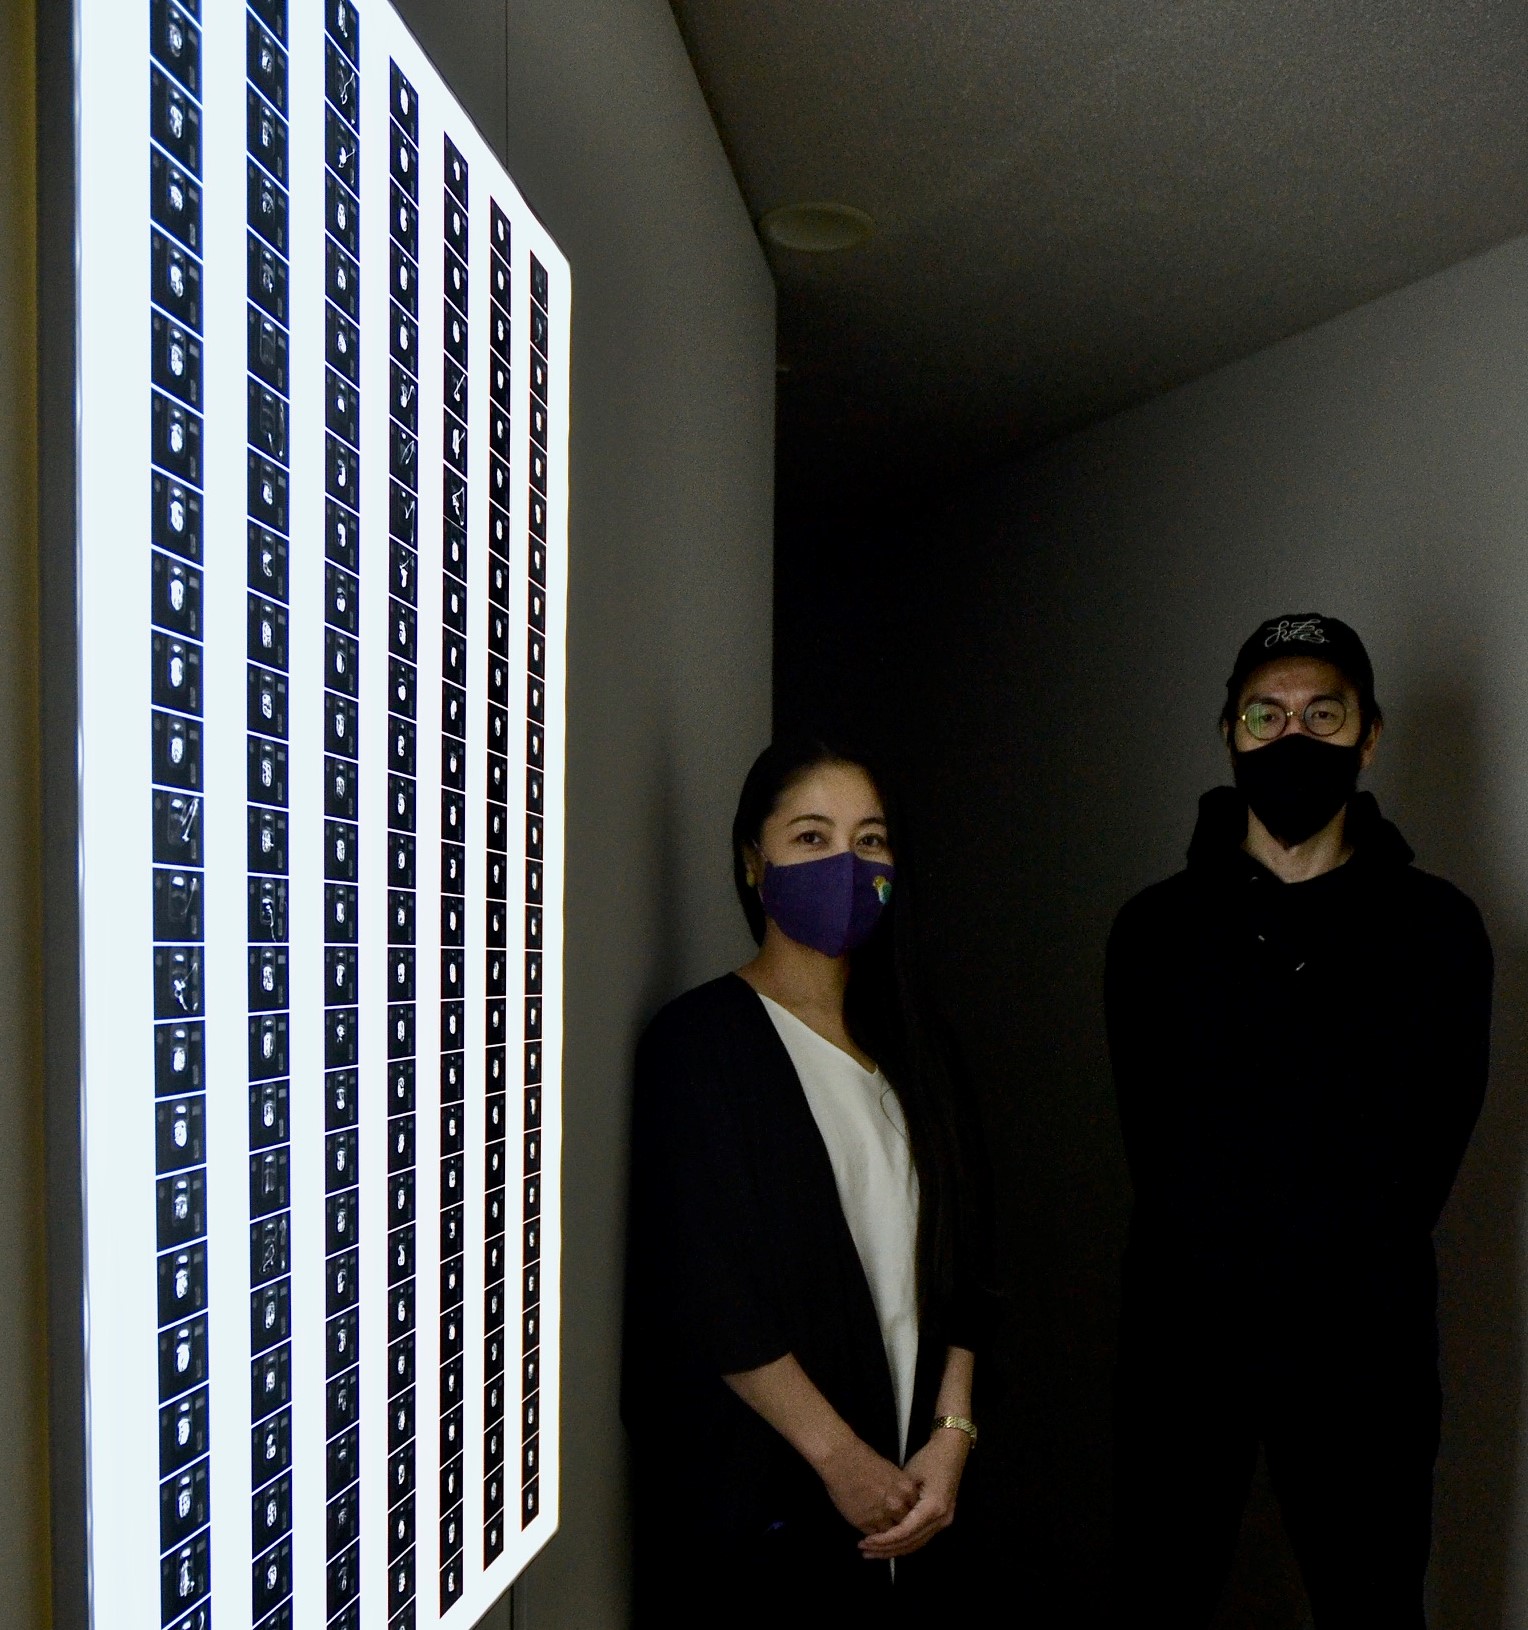 書家の川尾朋子さん、プログラマーの池田航成さんのお二人の対話によって生まれた作品を展示する写真展「Traces」にて、展示作品の印刷を担当。